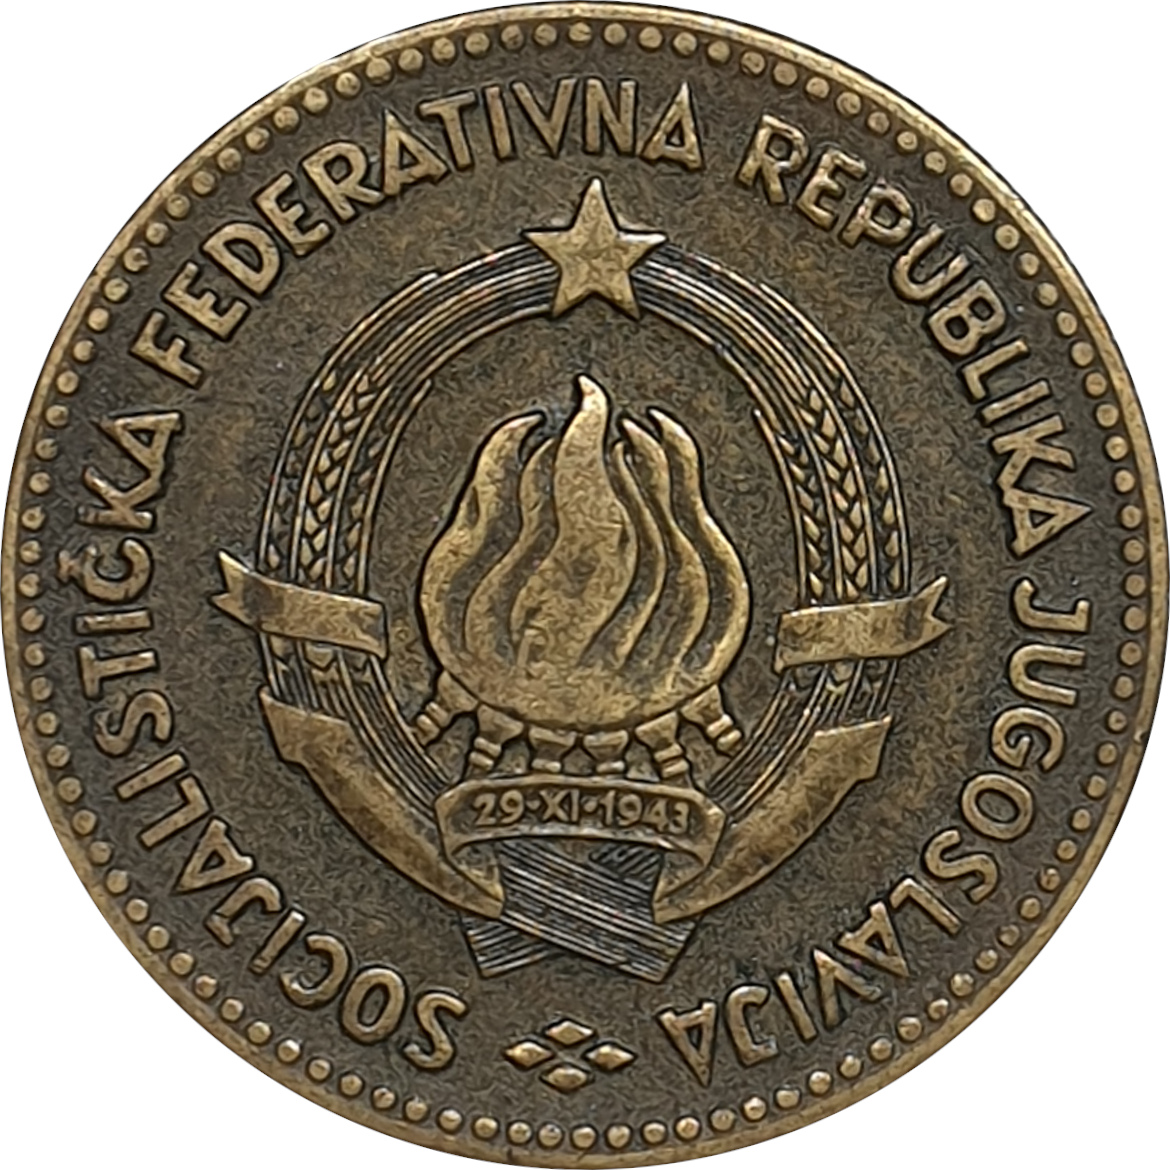 50 dinara - Emblem - Socialist Republic